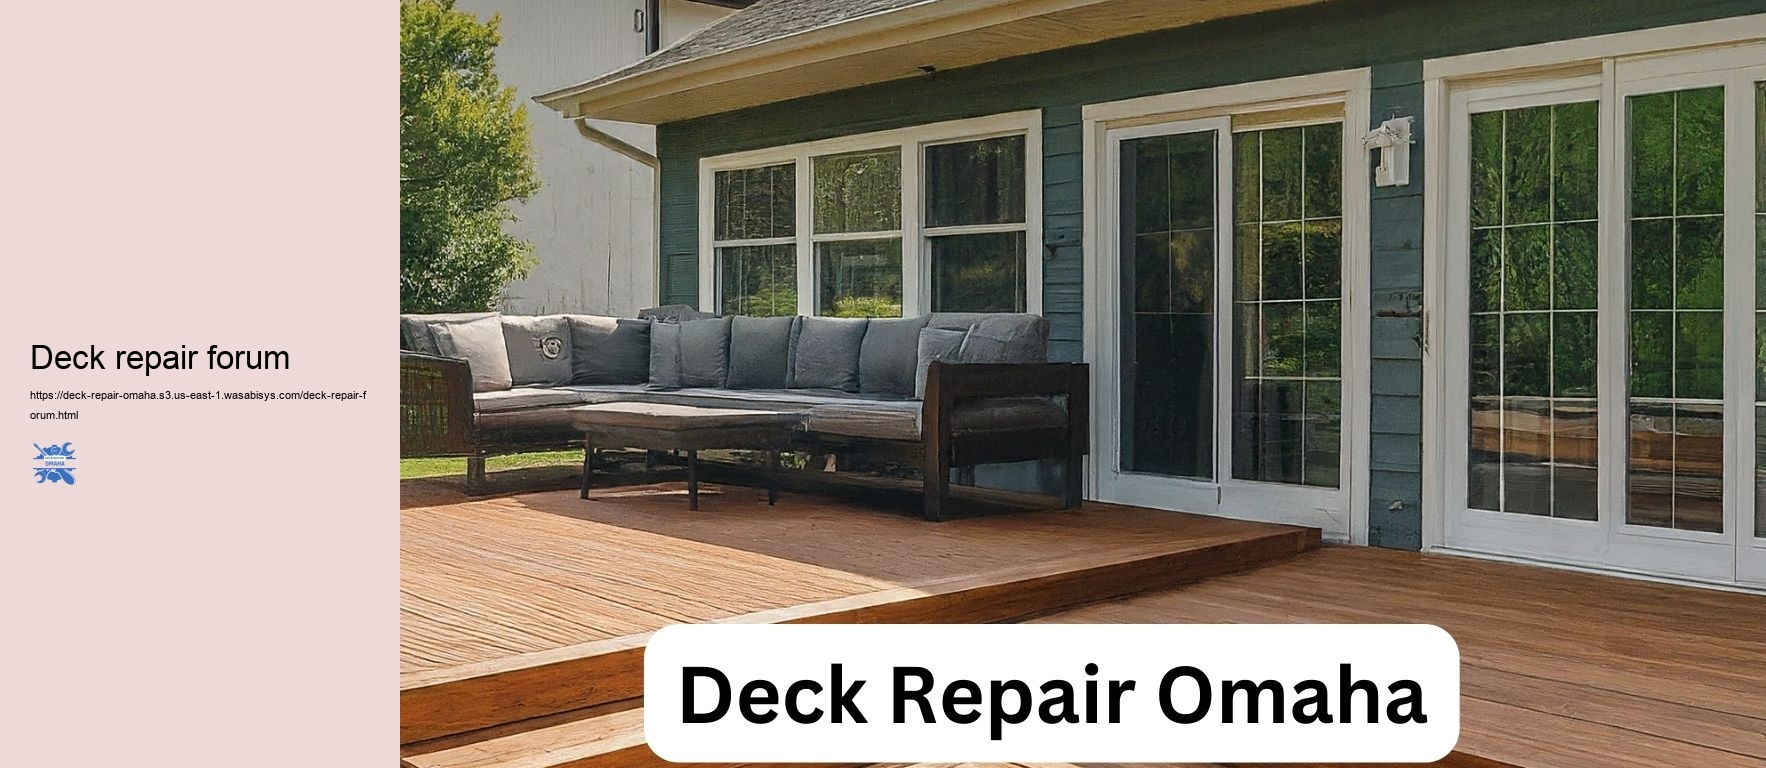 Deck repair forum